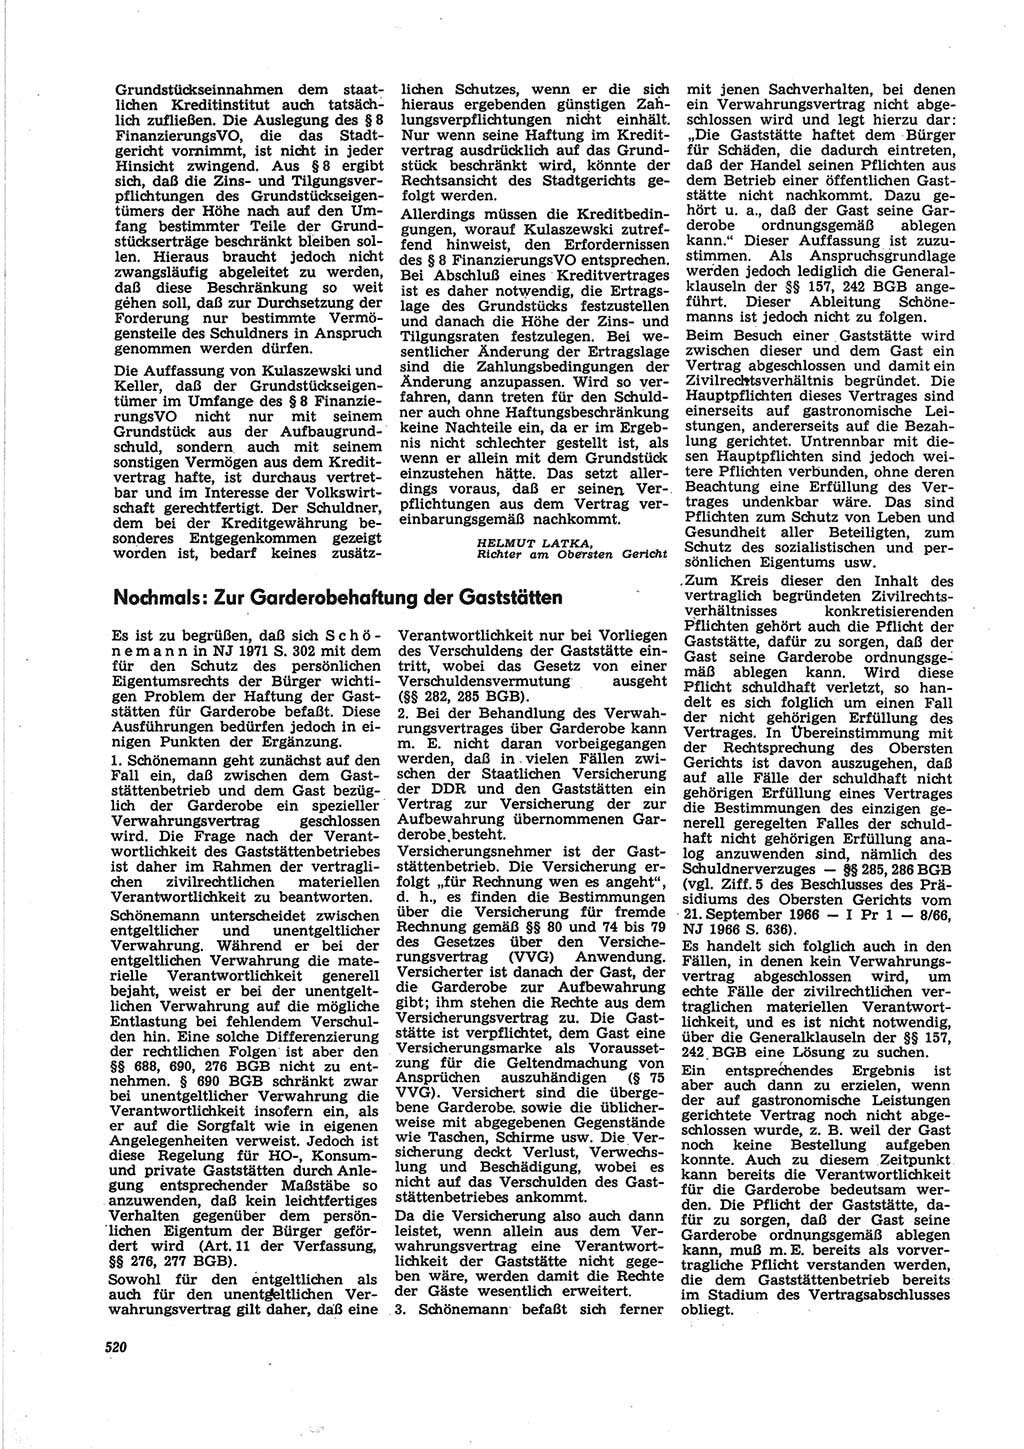 Neue Justiz (NJ), Zeitschrift für Recht und Rechtswissenschaft [Deutsche Demokratische Republik (DDR)], 25. Jahrgang 1971, Seite 520 (NJ DDR 1971, S. 520)